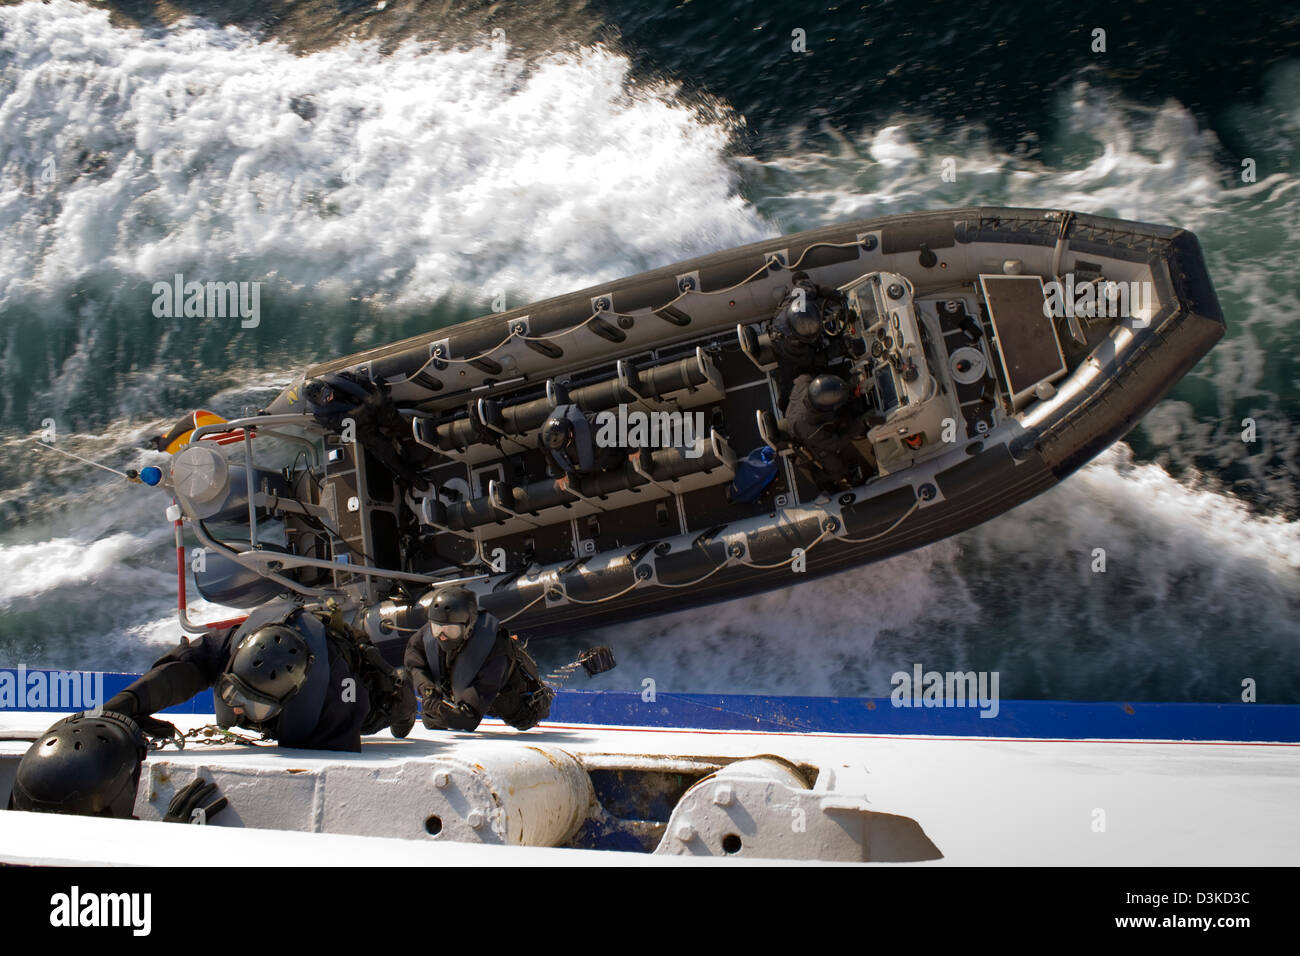 Ein SWAT (Special Forces) aufblasbare Schlauchboot entfernt wie Agenten an der Seite der beweglichen Schiff klettern. Stockfoto